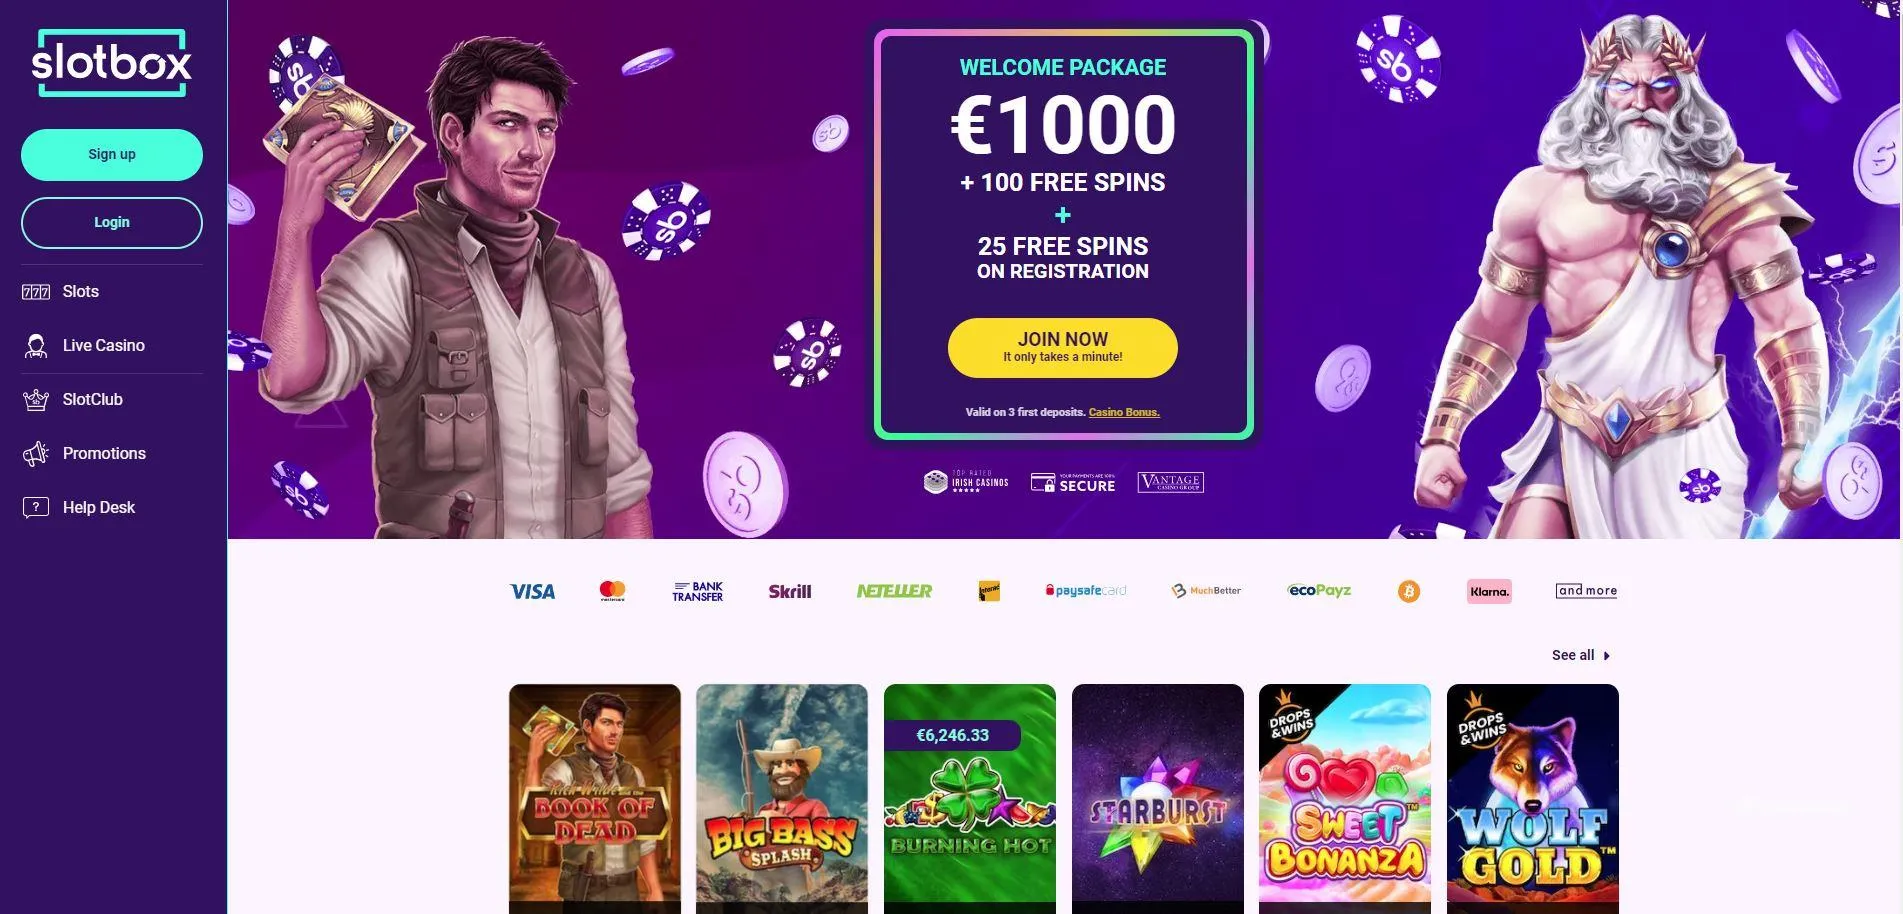 slotbox online casino irish online casino free spins welcome bonus mobile casino